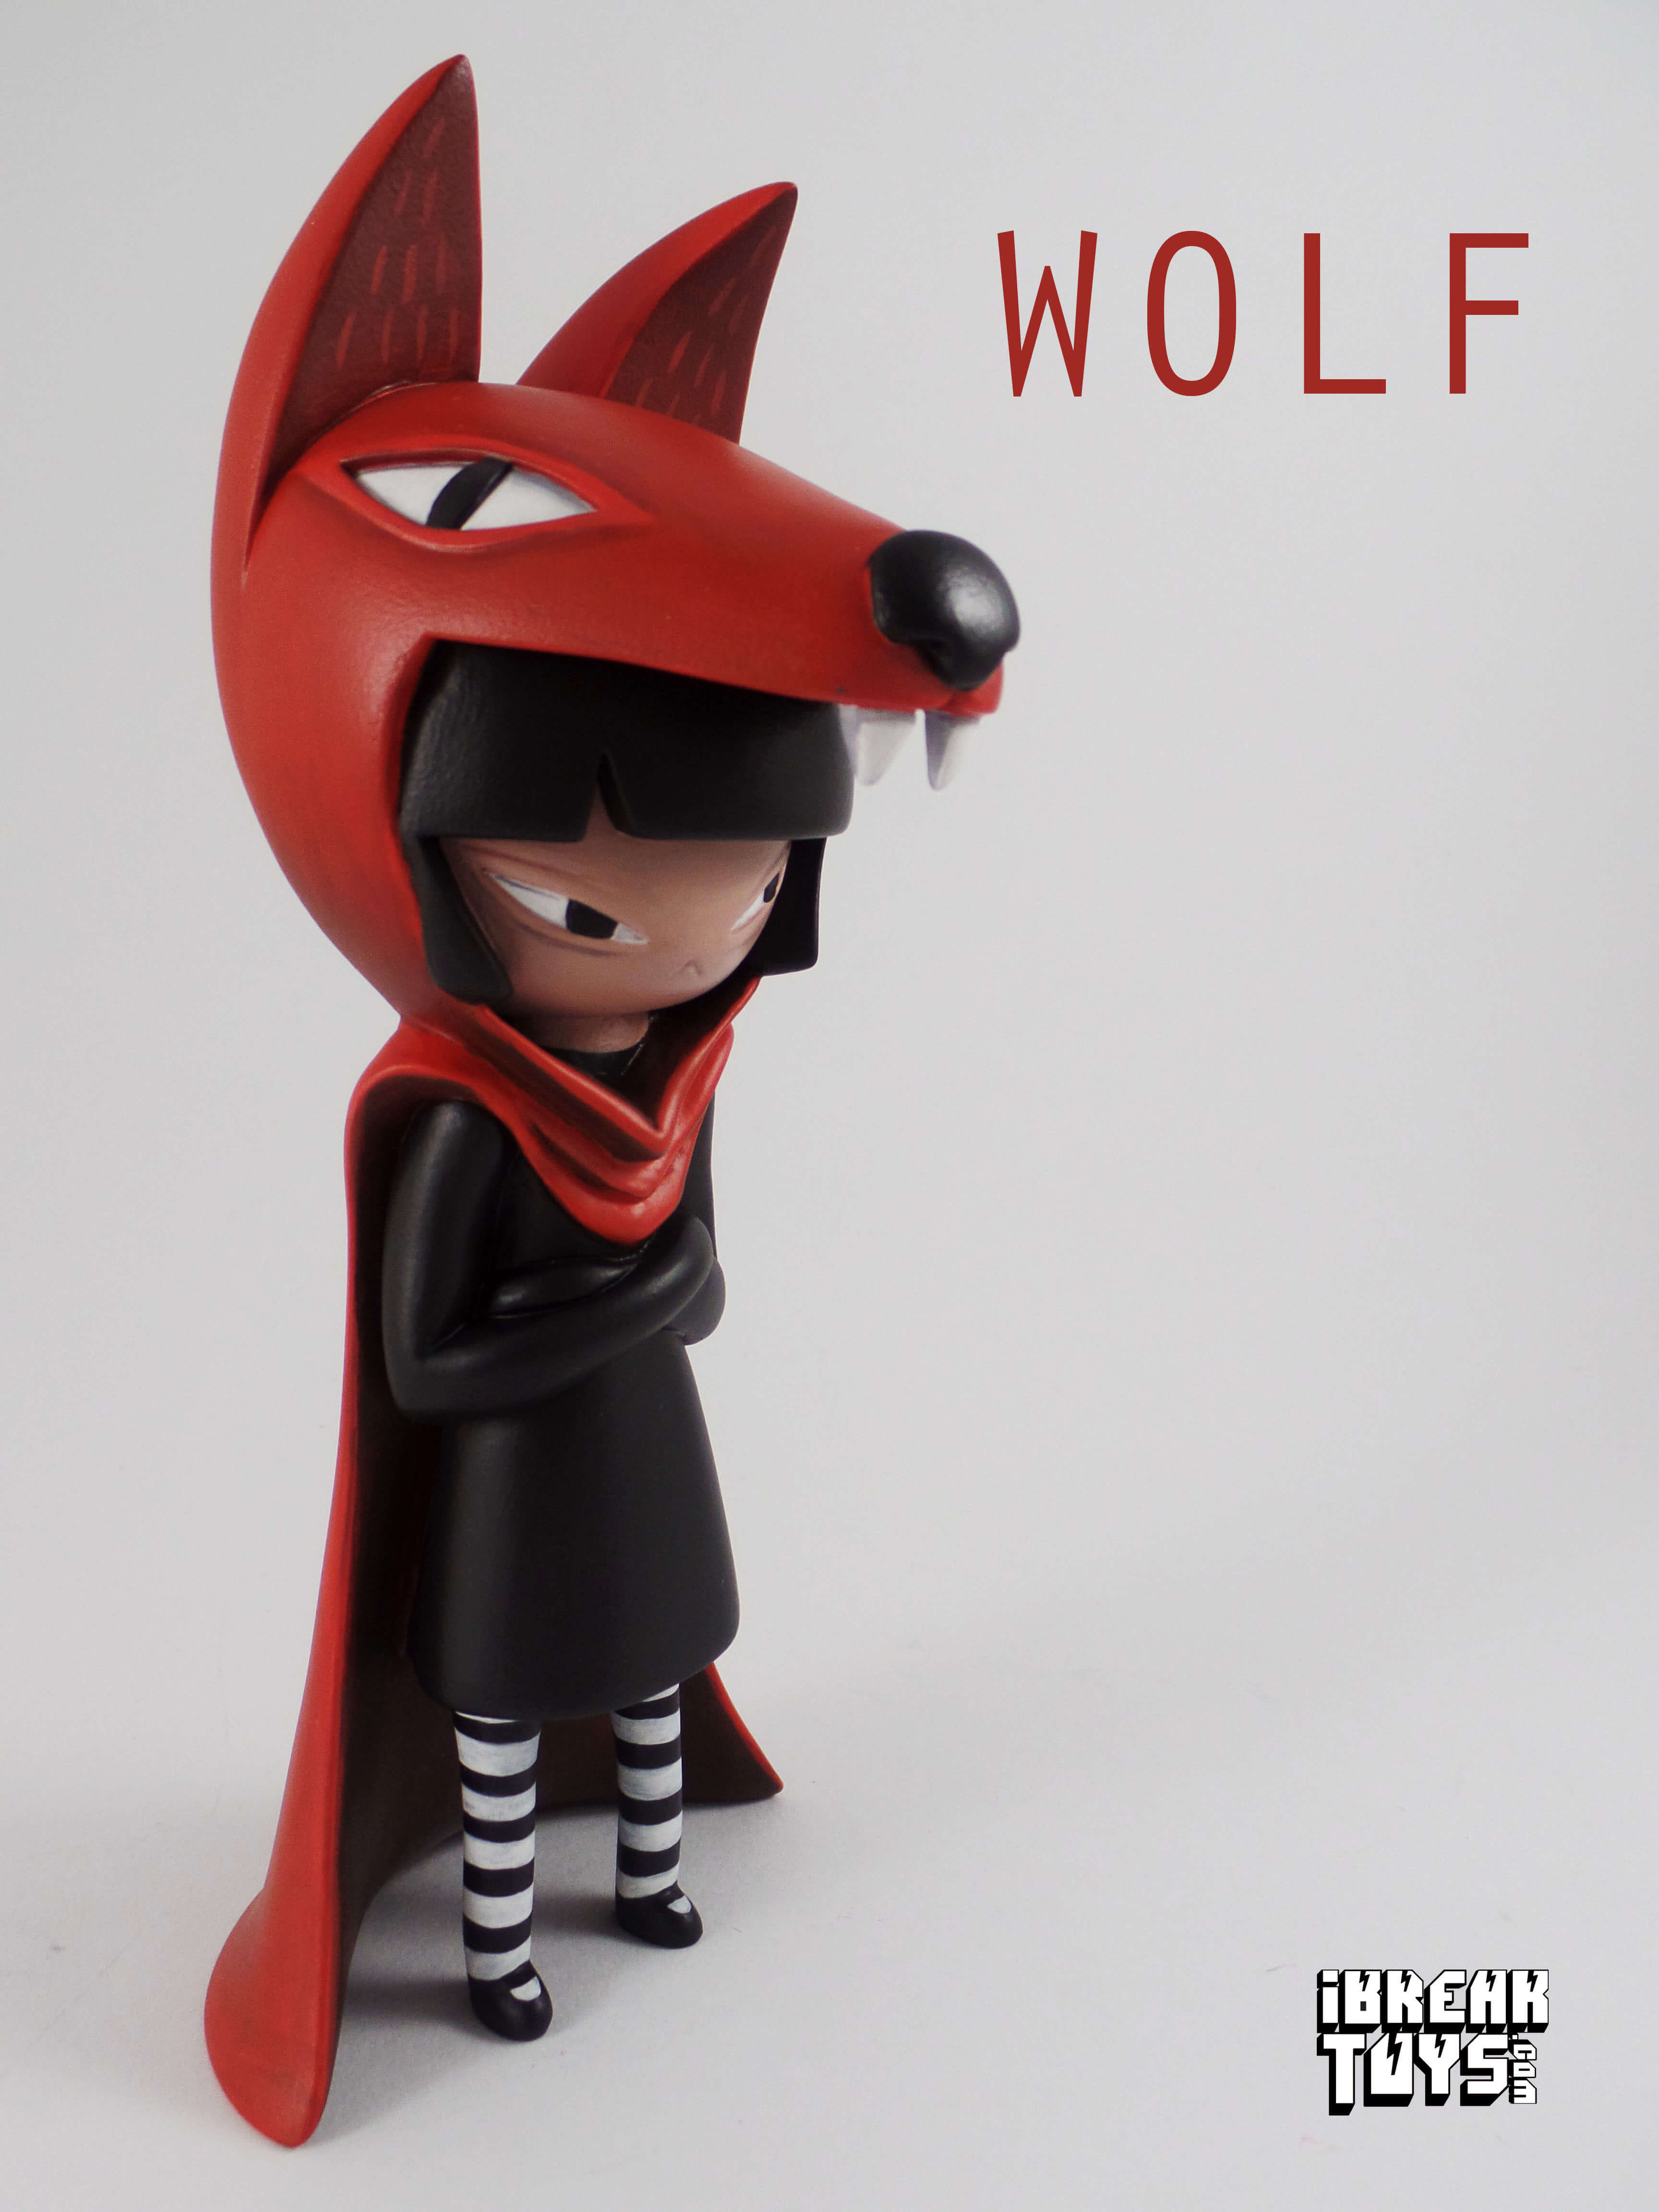 Wolf-By-Lisa-Rae-Hansen-side-kidzilla-Martian-toys-wet-works-yoii